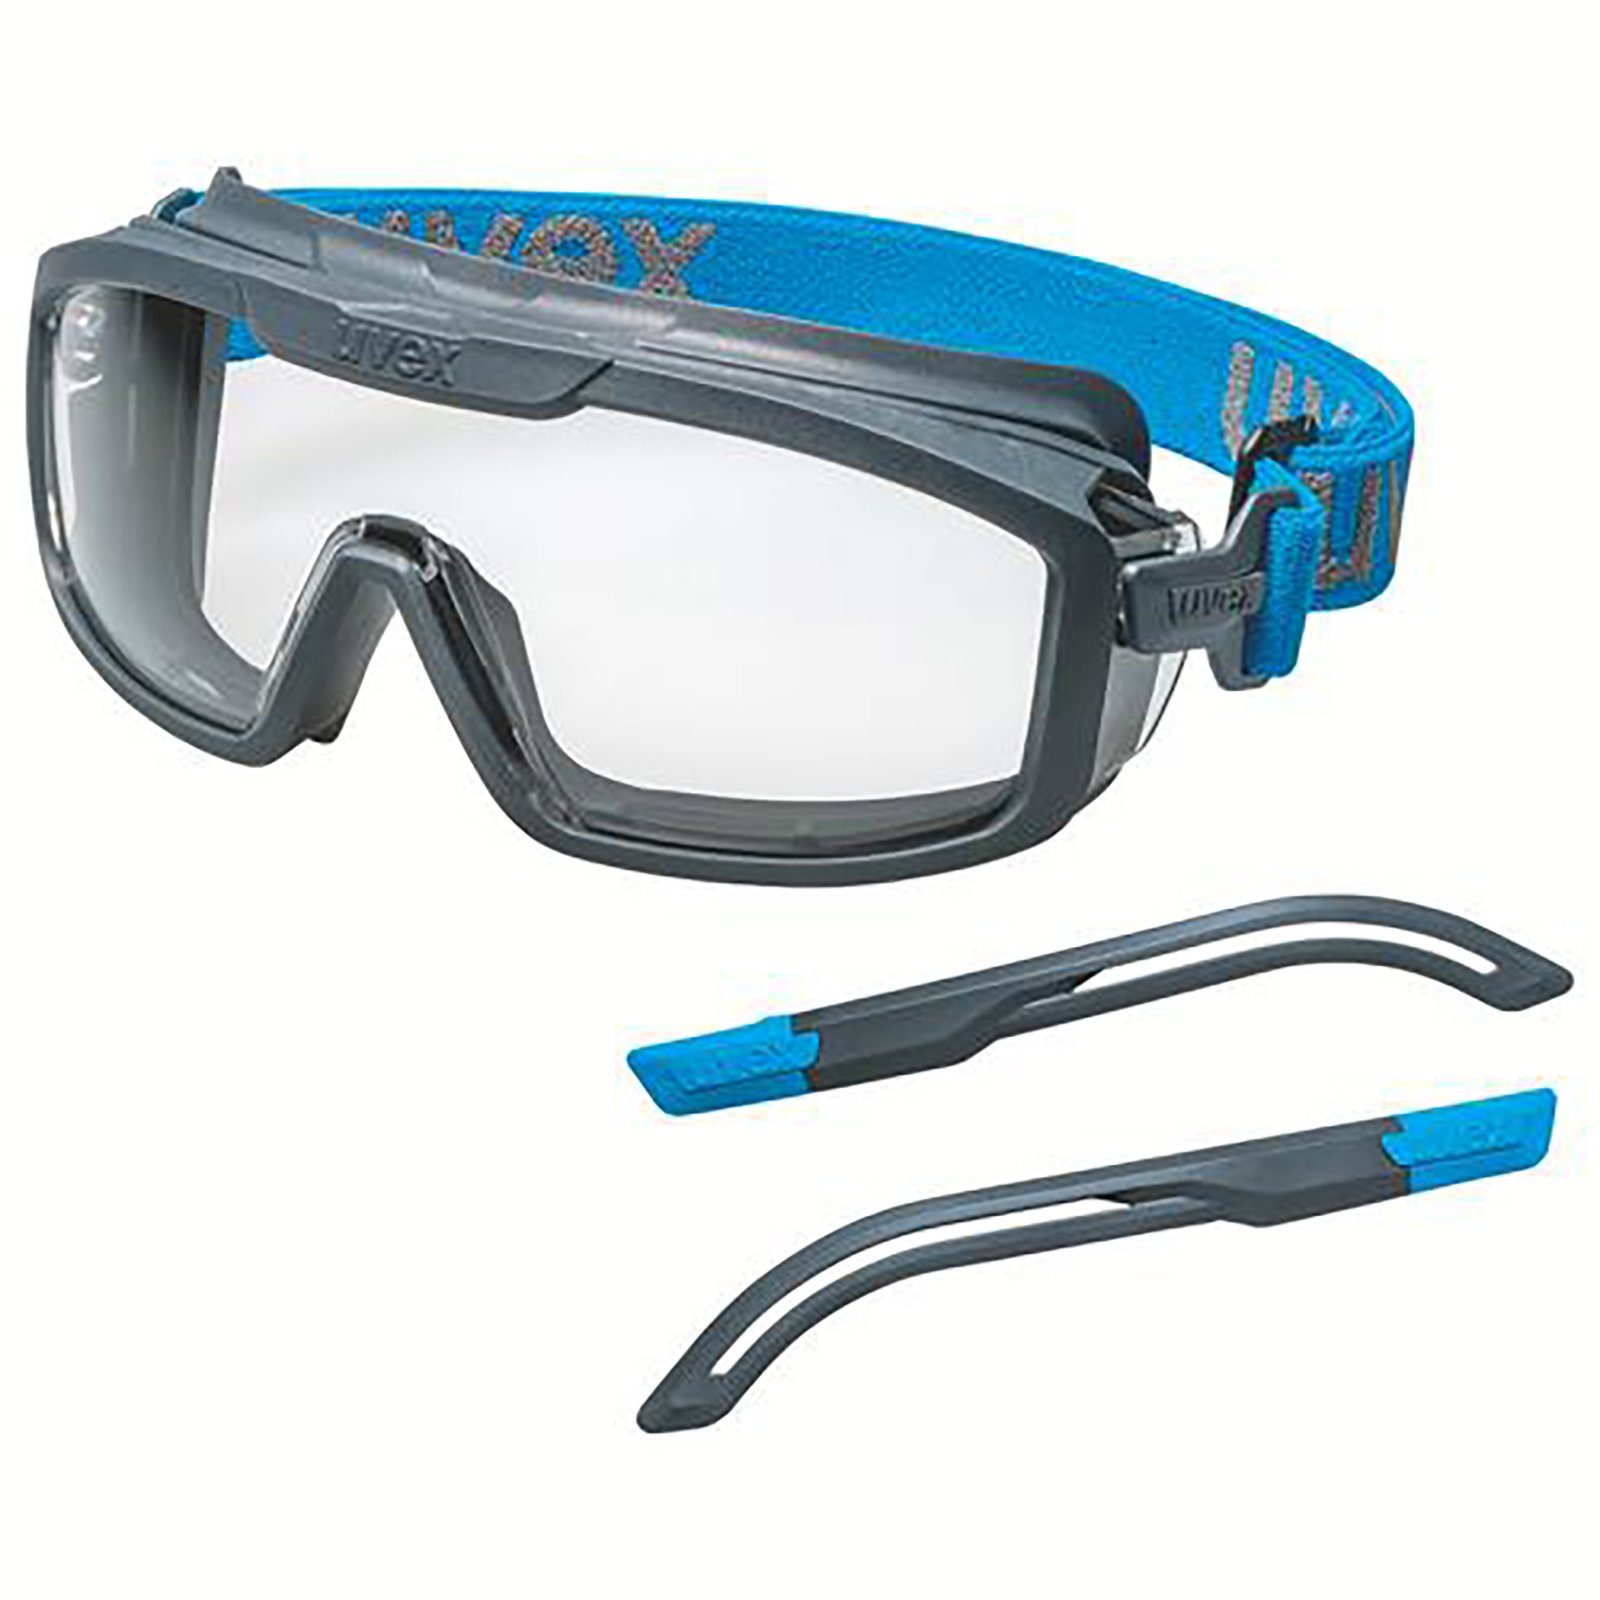 Arbeitsschutzbrille sv 9143300 Vollsichtbrille Uvex exc. i-guard+